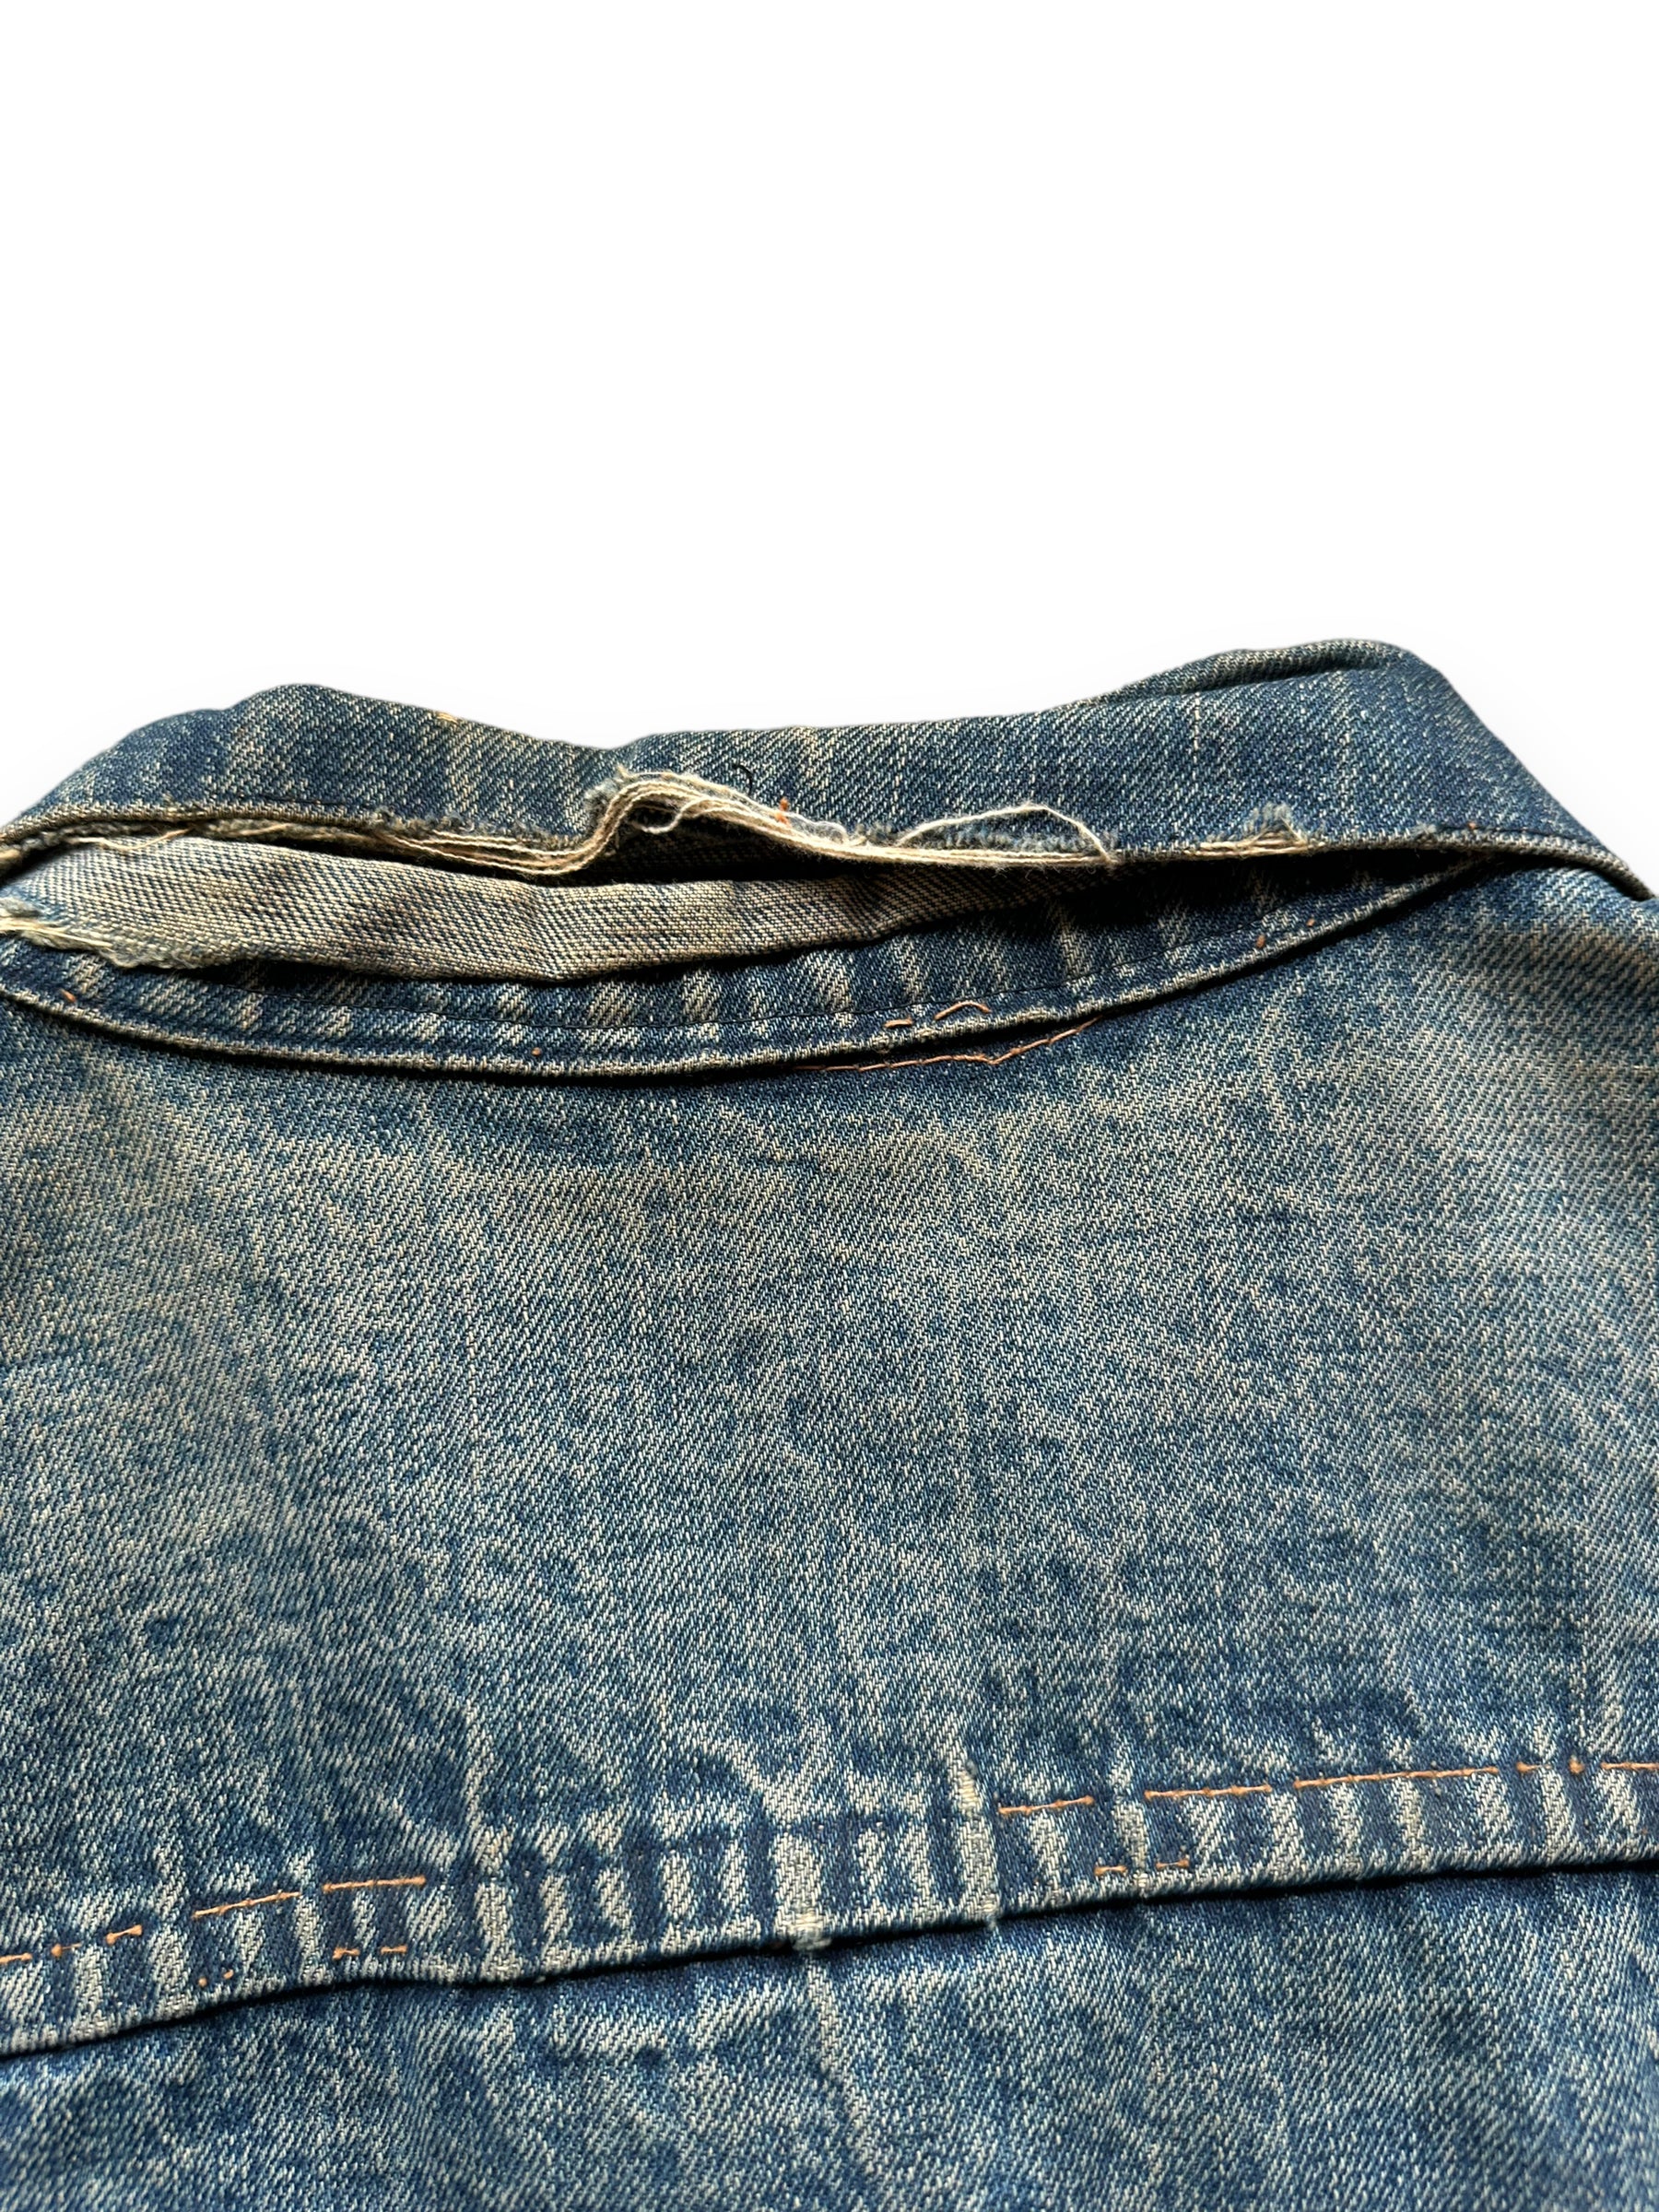 Back collar damage of Levi's Big E Type III Blanket Lined Trucker w/ Butterfly Embroidery SZ 42 | Vintage Denim Workwear Seattle | Seattle Vintage Denim